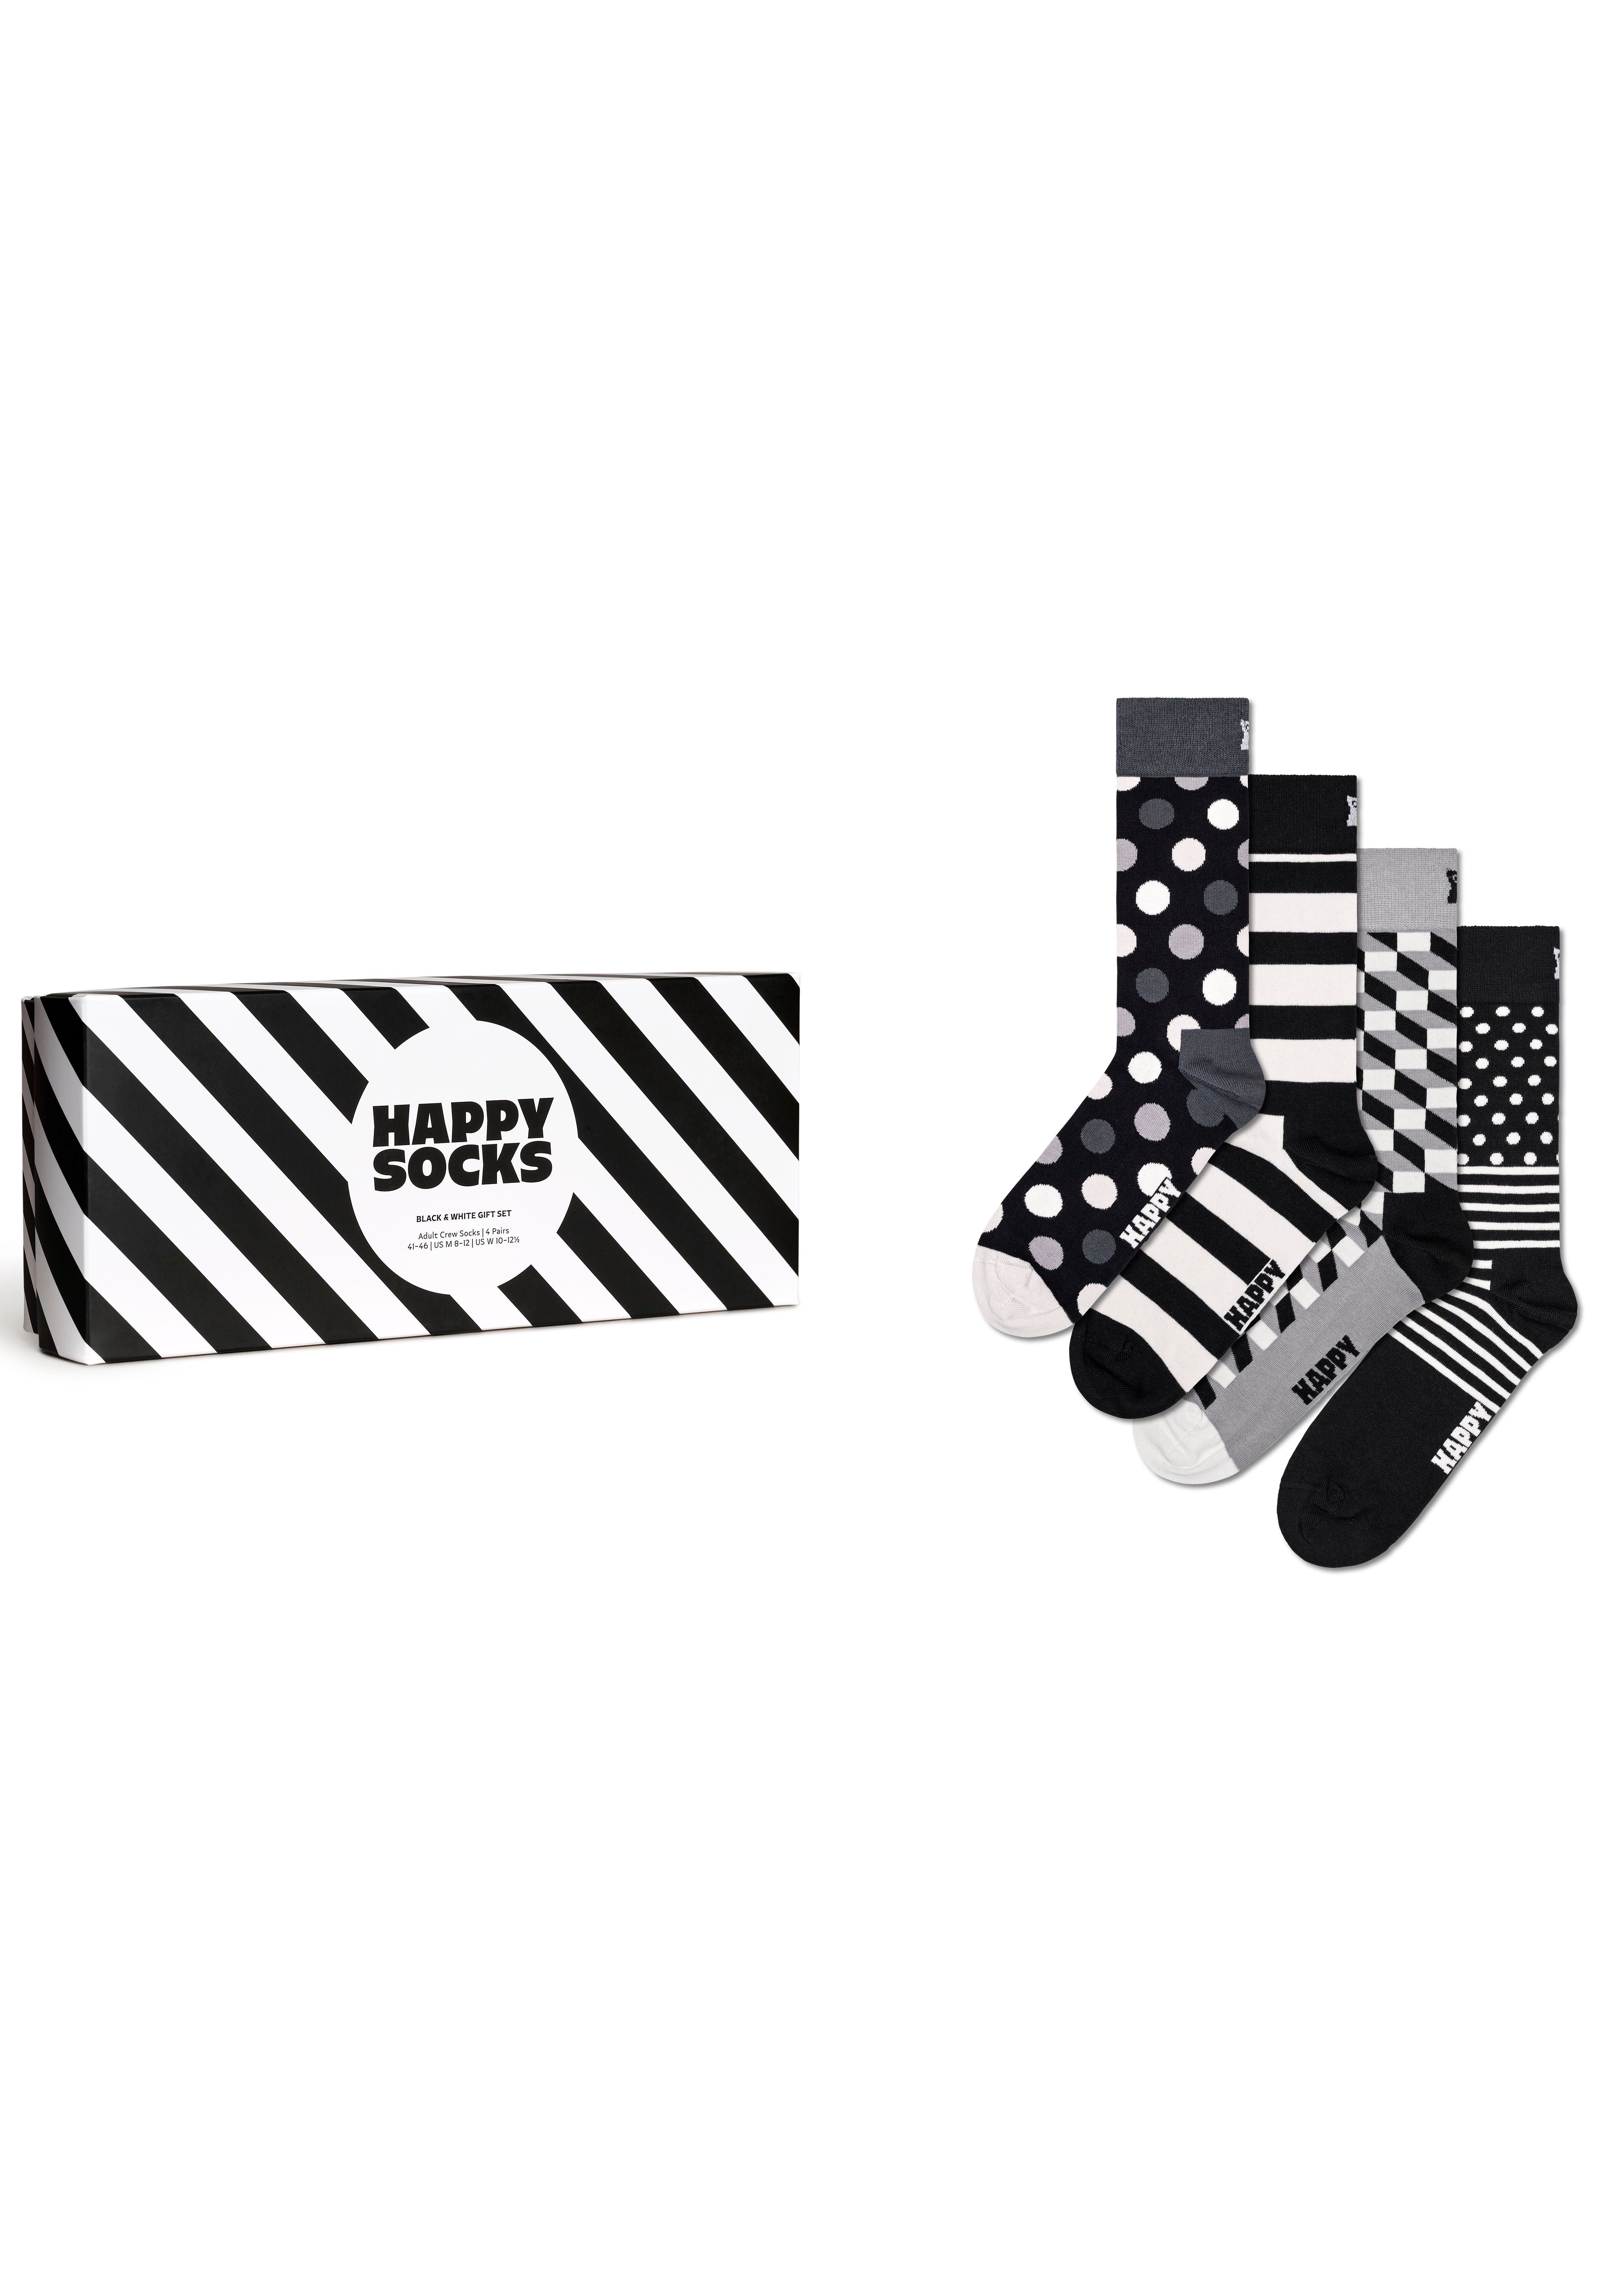 Happy Socks & Black Classic White 4-Paar) Socks Socken Gift (Packung, Set